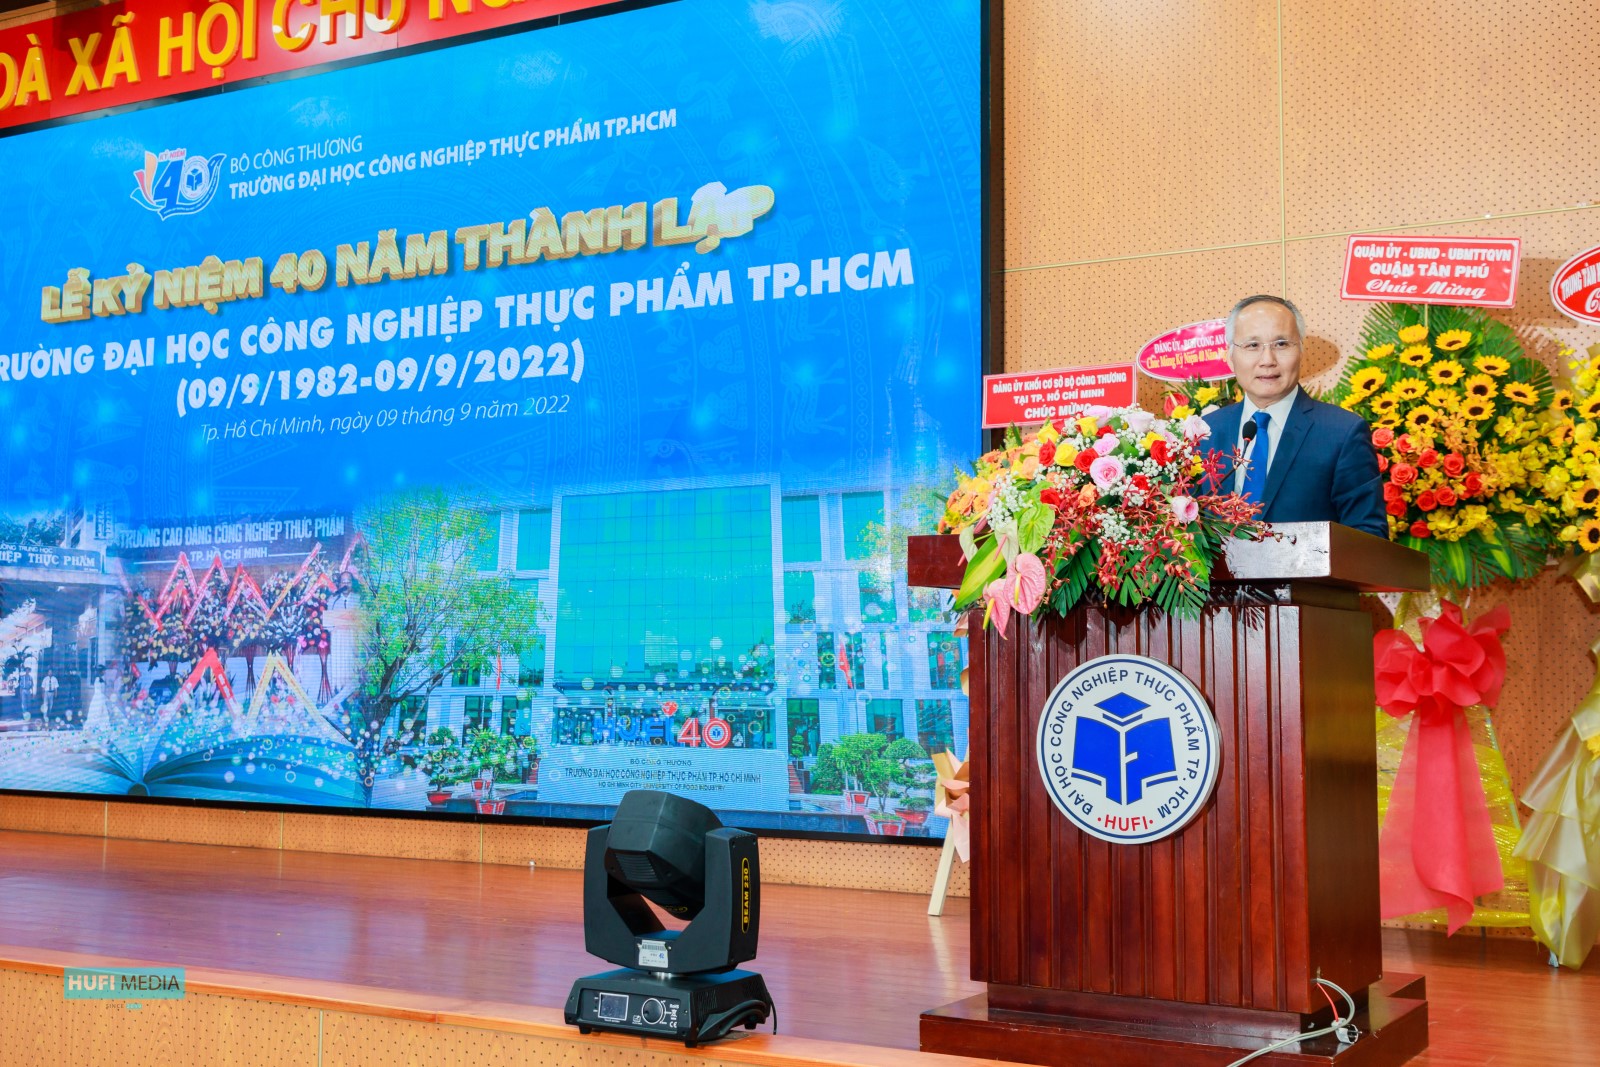 Thứ trưởng Trần Quốc Khánh dự lễ kỷ niệm 40 năm thành lập Đại học Công nghiệp Thực phẩm TP.HCM